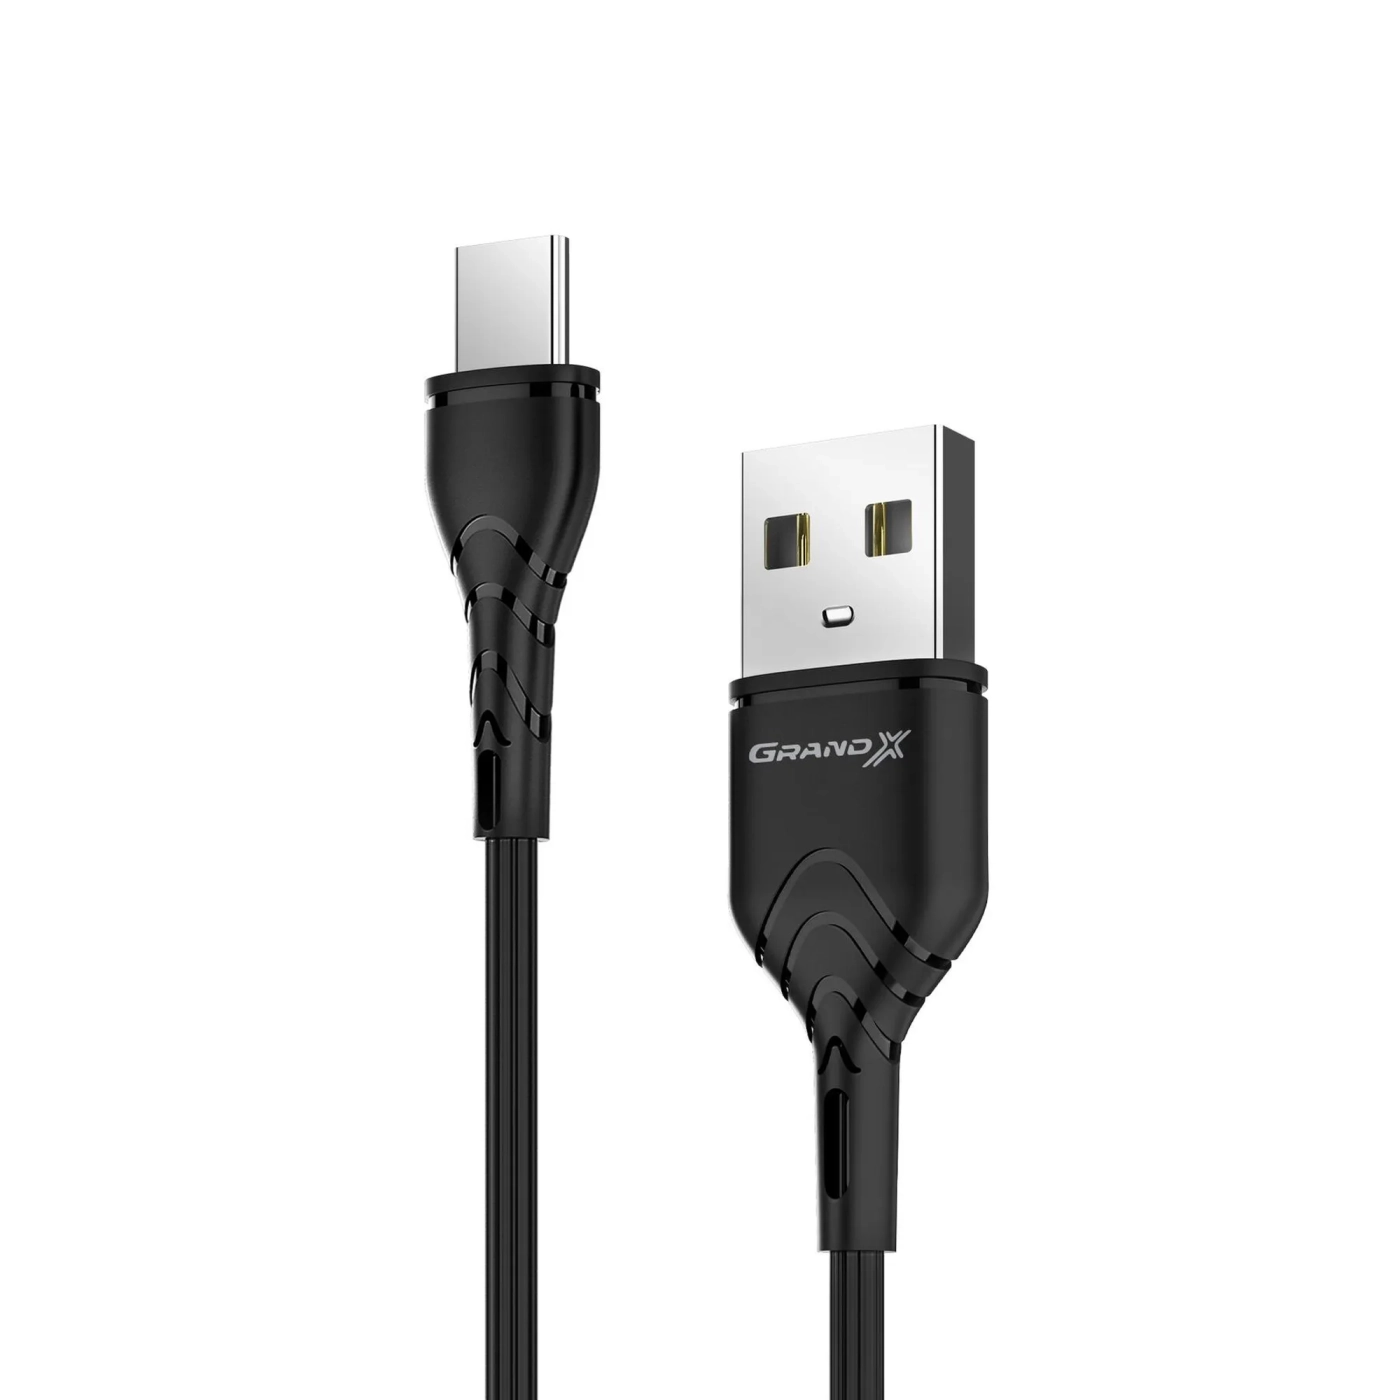 Купить Кабель Grand-X USB Type-C 3A 1m Black (PC-03B) - фото 1